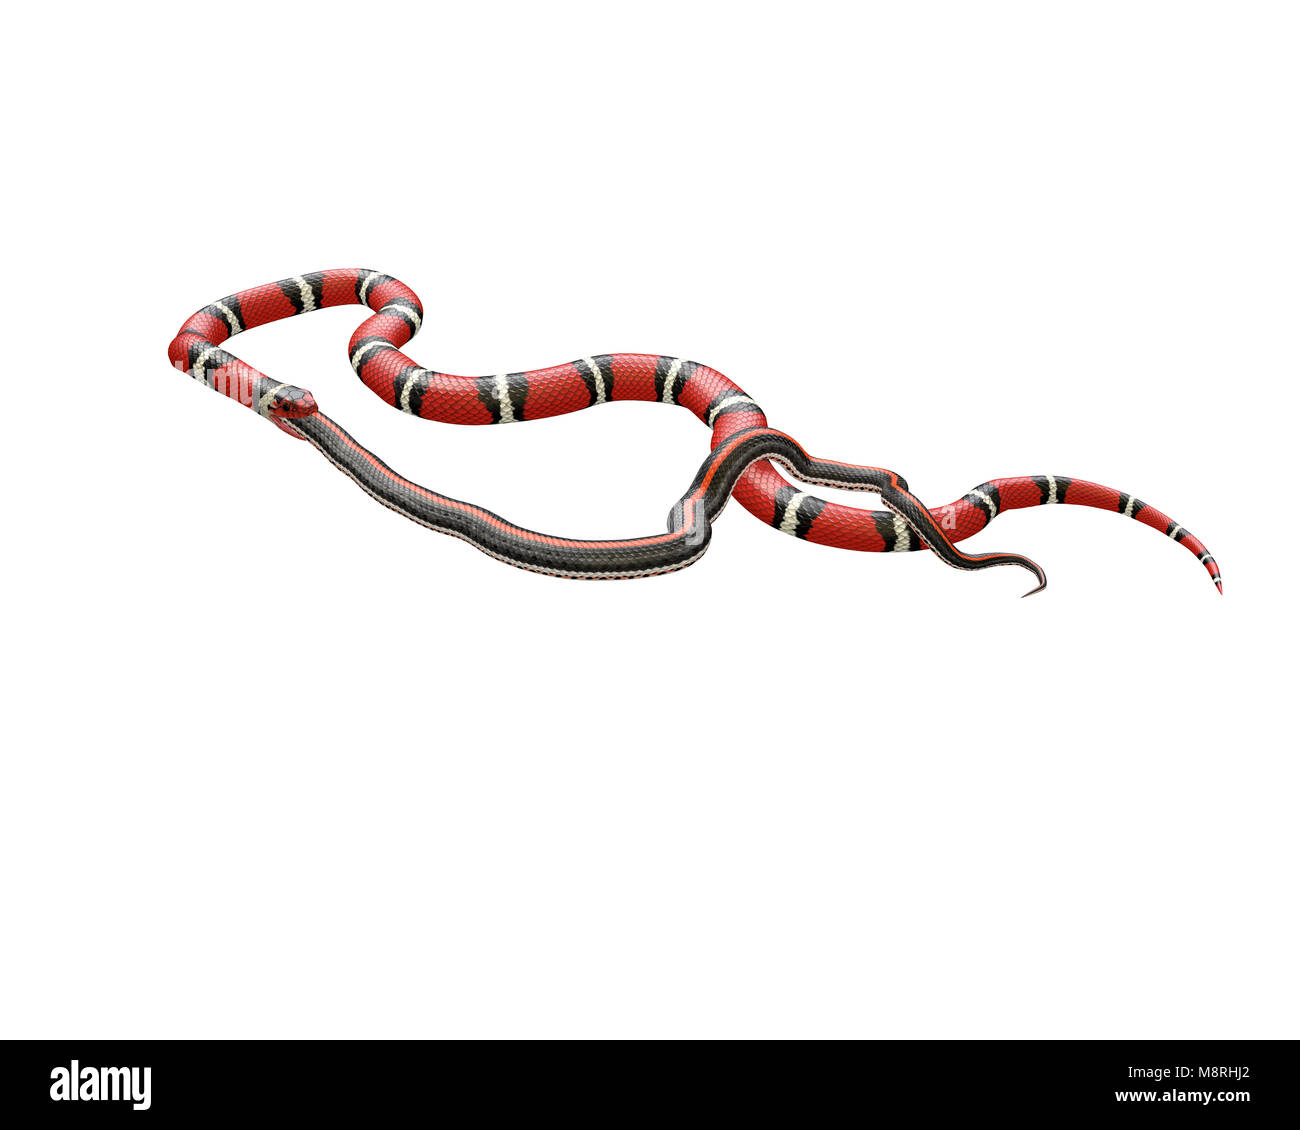 3D Illustration d'un serpent roi écarlate avaler une couleuvre rayée Banque D'Images